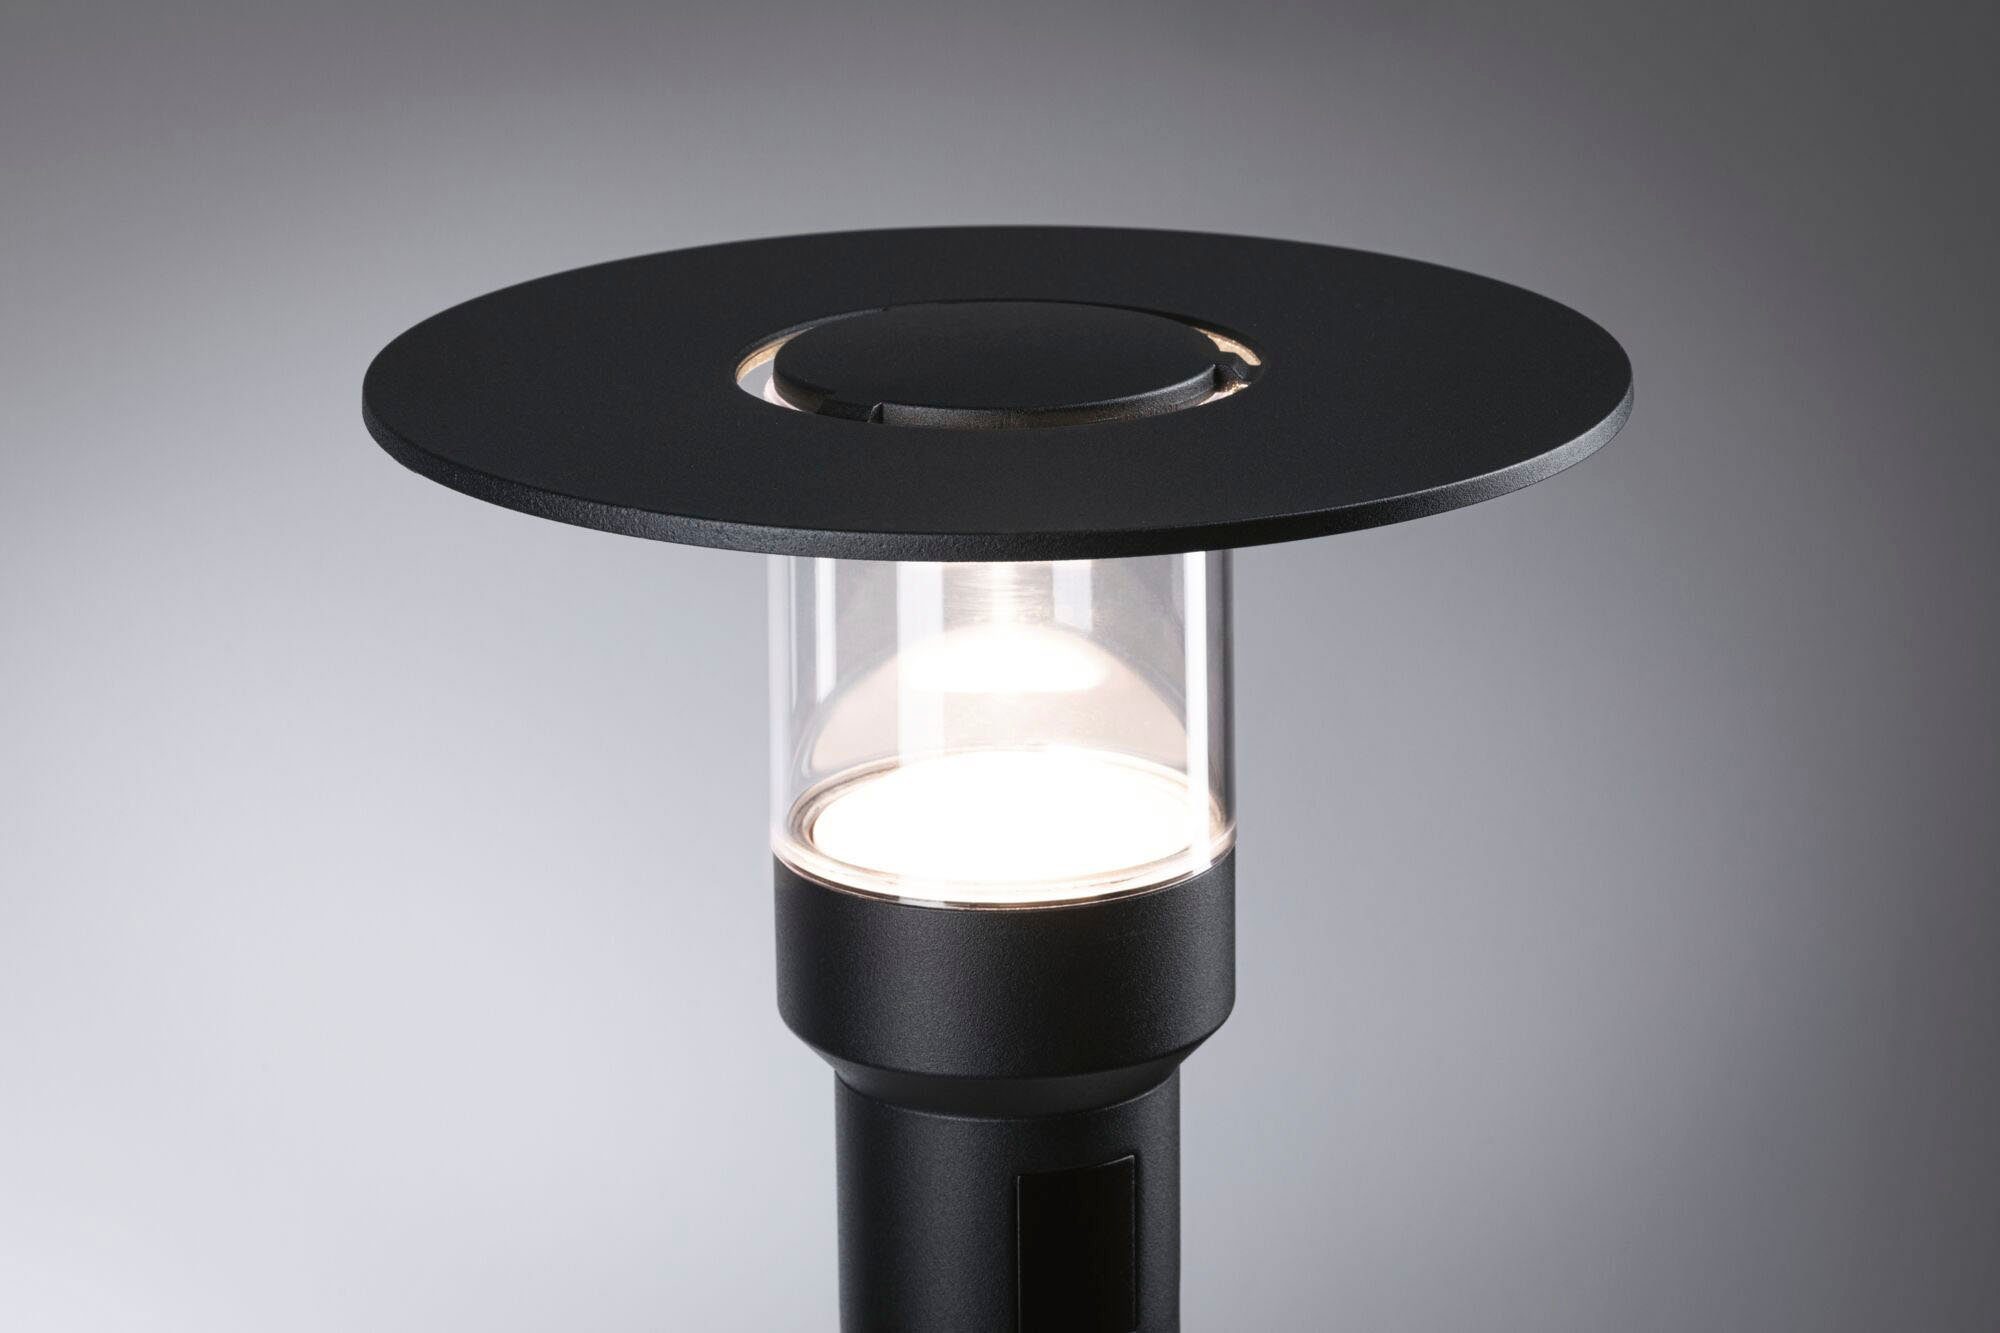 fest LED Warmweiß, Paulmann 230V PIR-Sensor LED mit Pollerleuchte, Gartenleuchte seewasserresistent, integriert, Sienna